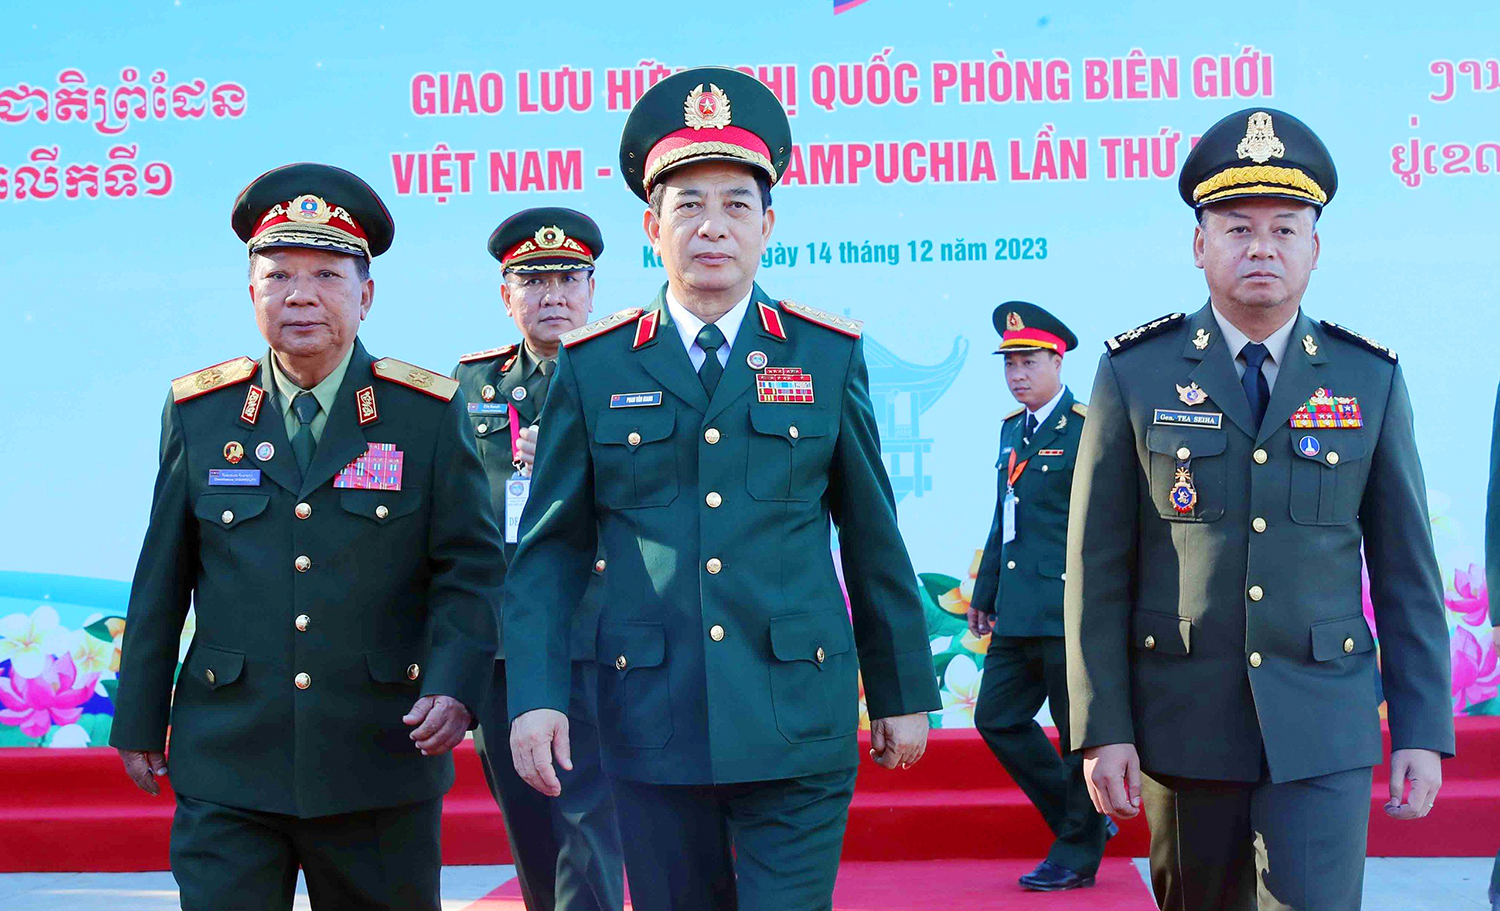 Giao lưu hữu nghị cấp Bộ trưởng Bộ Quốc phòng ba nước Việt Nam - Lào - Campuchia 